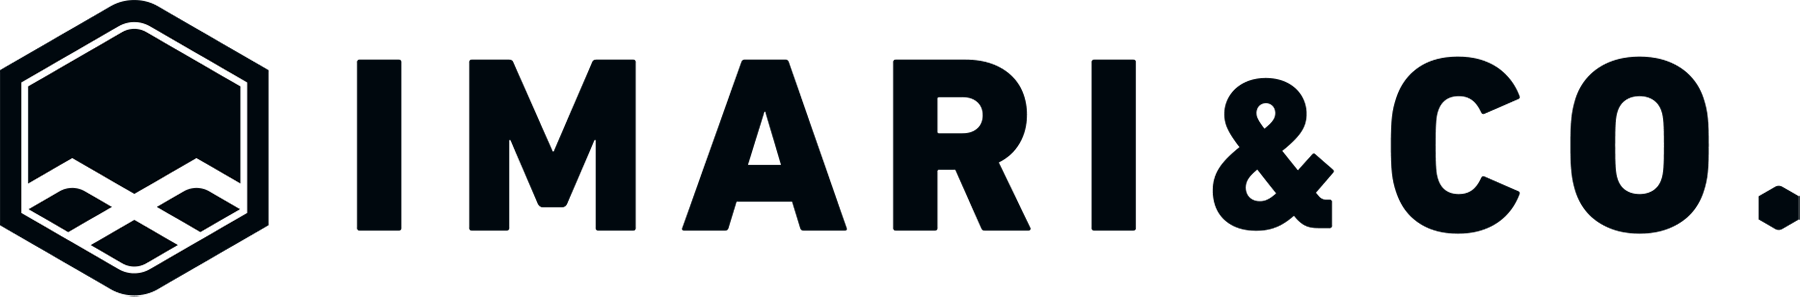 IMARI株式会社-ロゴ